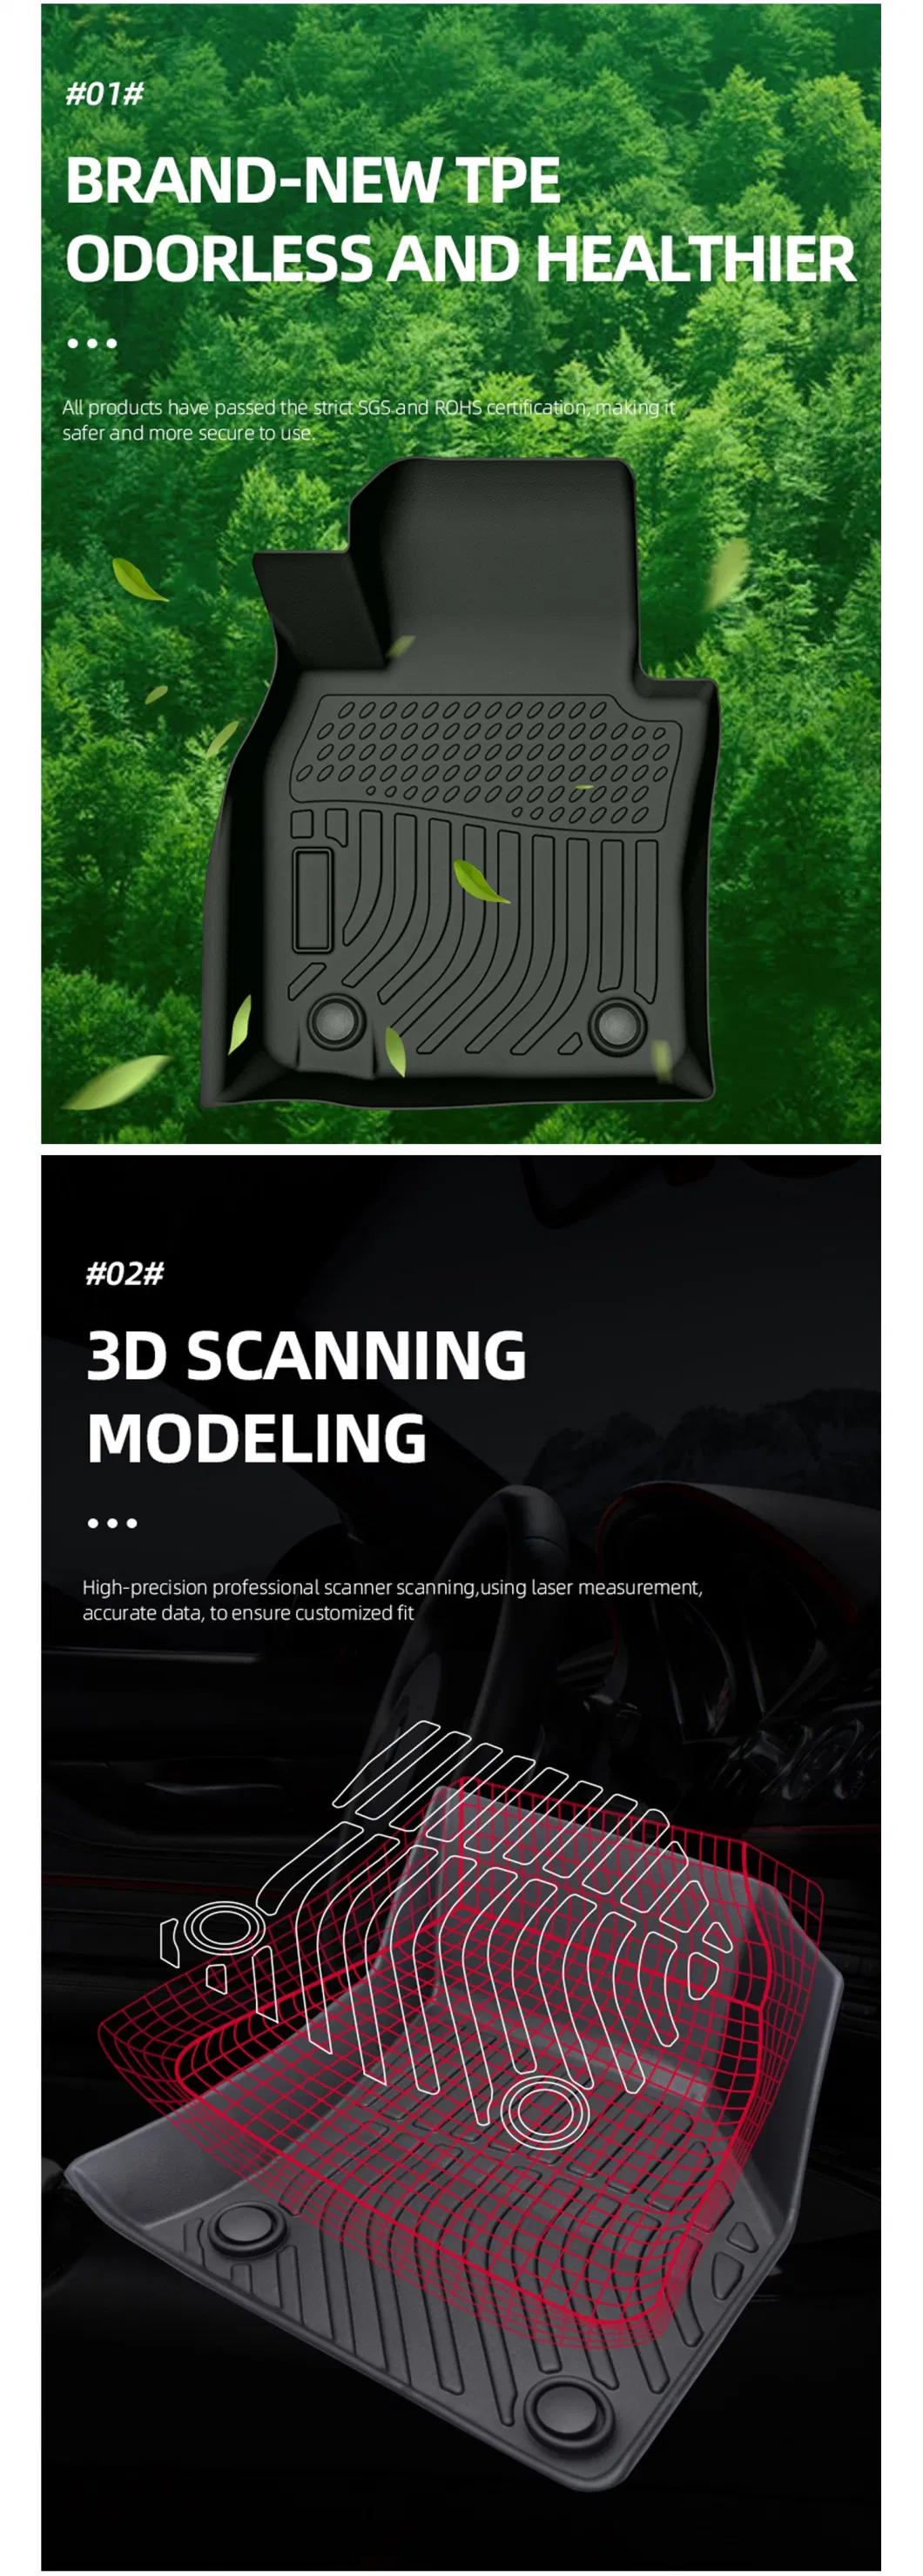 Hot Sale 3D TPE Car Floor Mats for Acura Rdx (2019)